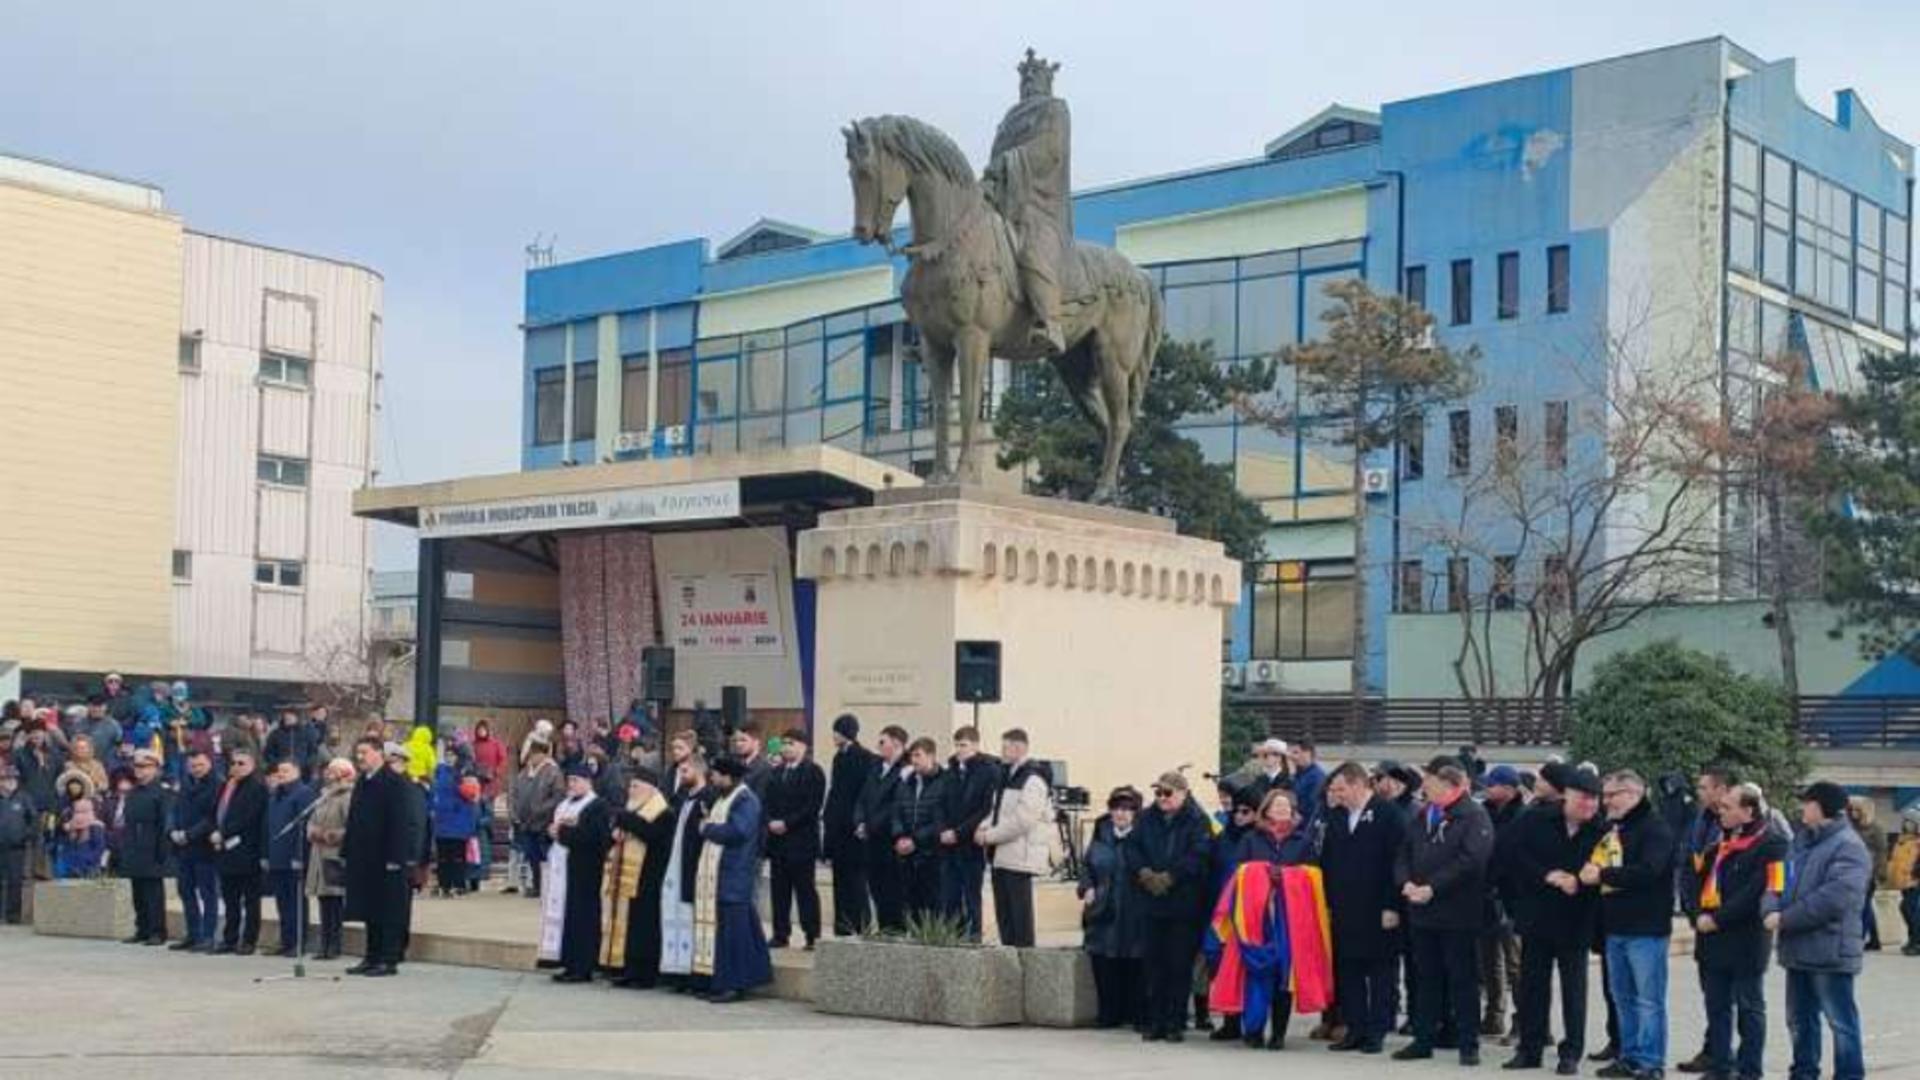 Huiduieli și controverse în timpul ceremoniei de Ziua Unirii Principatelor Române la Tulcea. Foto: Agerpres